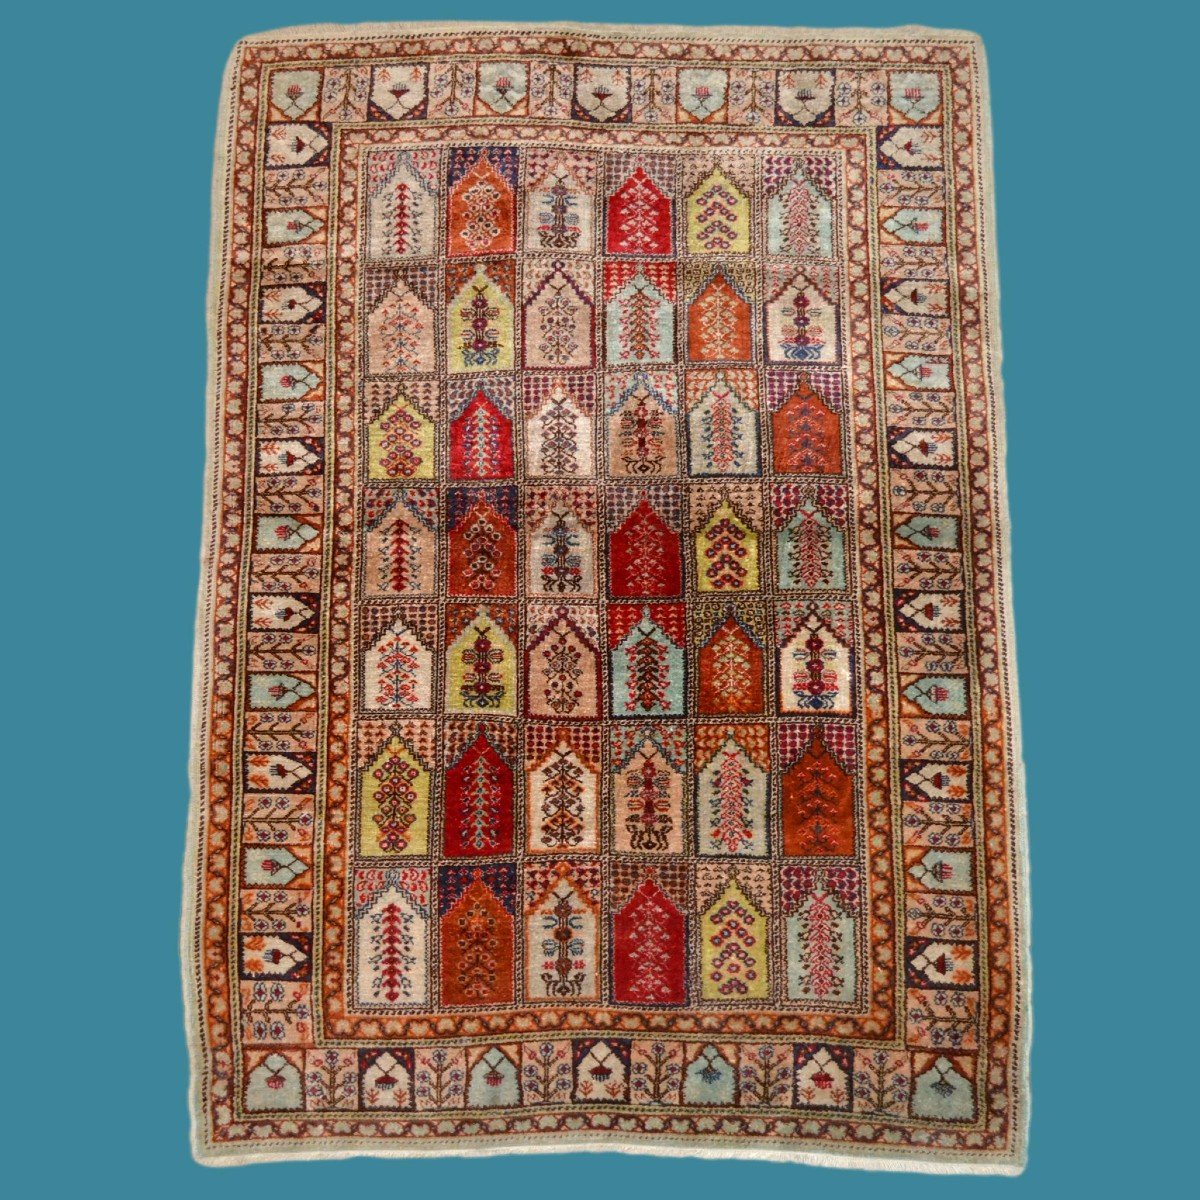 Kayseri ancien, laine & soie, 94 cm x 136 cm, noué main en Turquie vers 1920, en très bel état